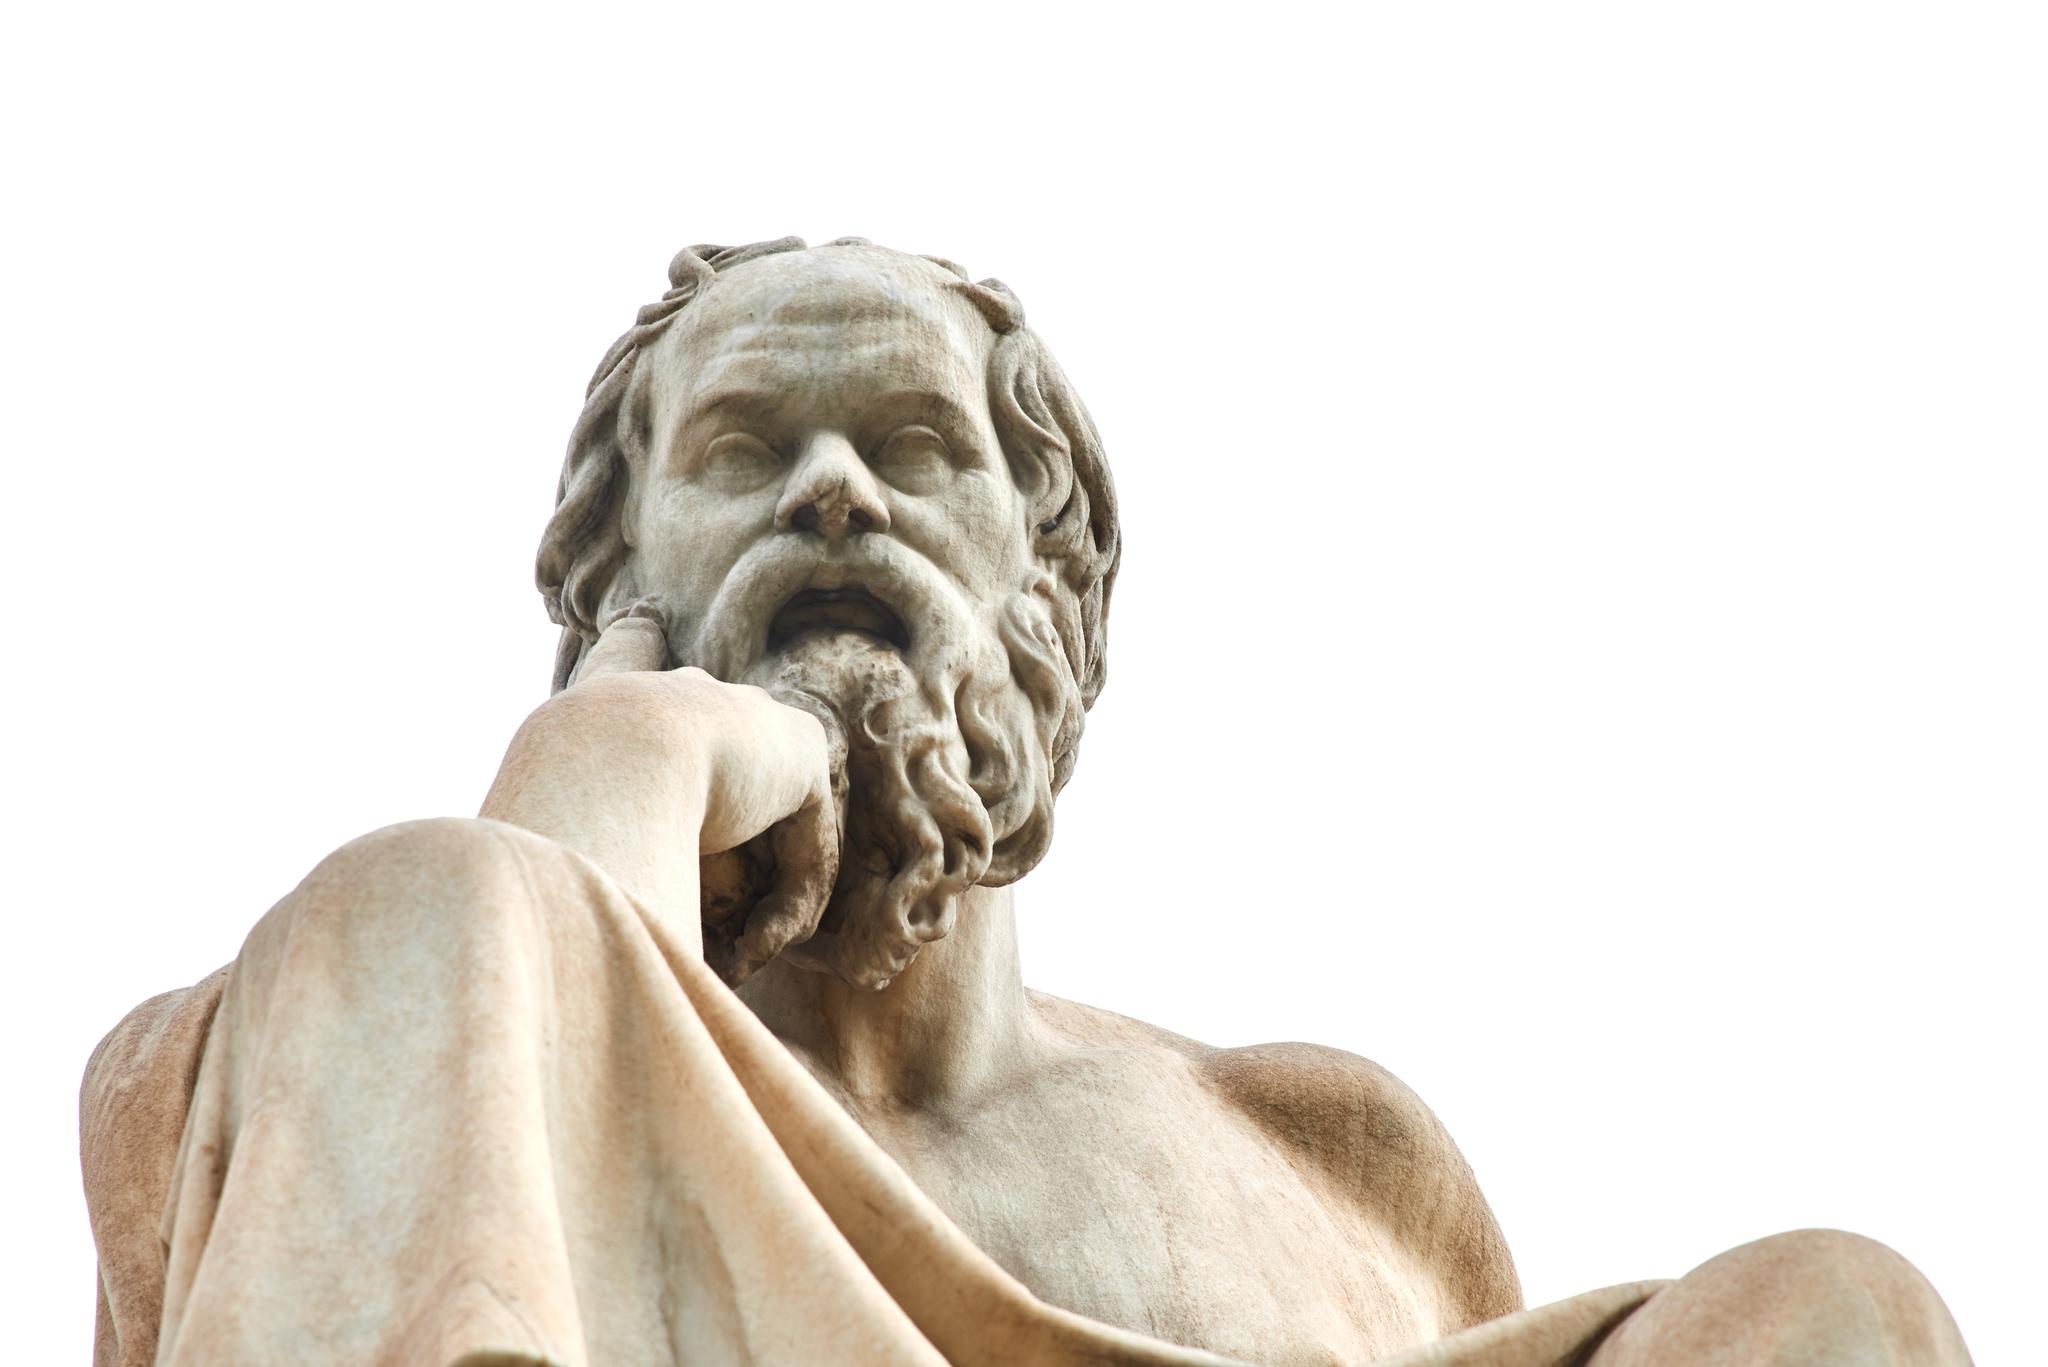 Alt fra antikkens filosofi, her representert ved en av Athens Sokrates-statuer, til moderne fysikk skal pugges, skriver artikkelforfatteren.